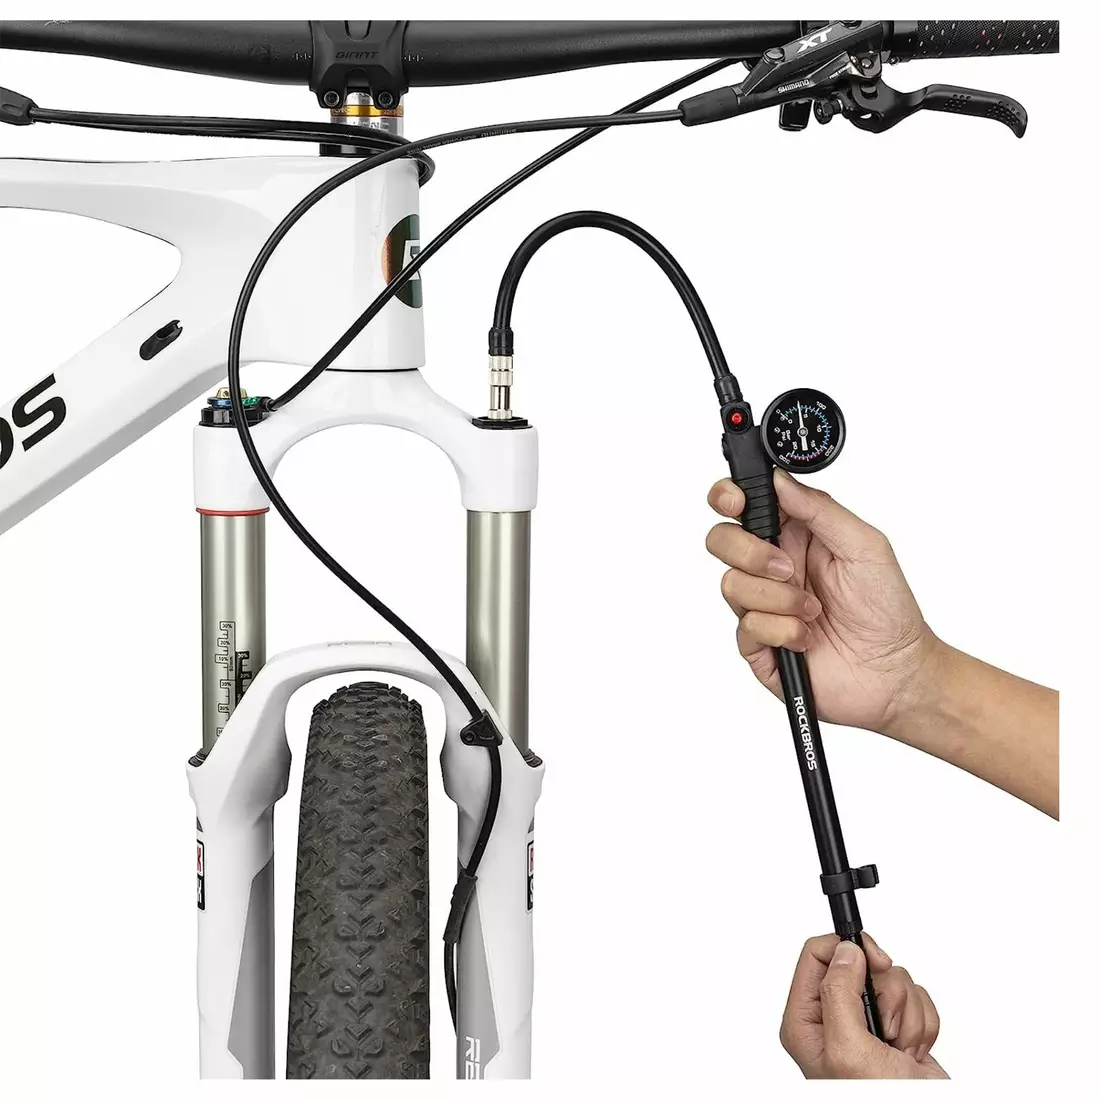 Rockbros pompa pentru biciclete pentru amortizoare, 300psi 42320003001